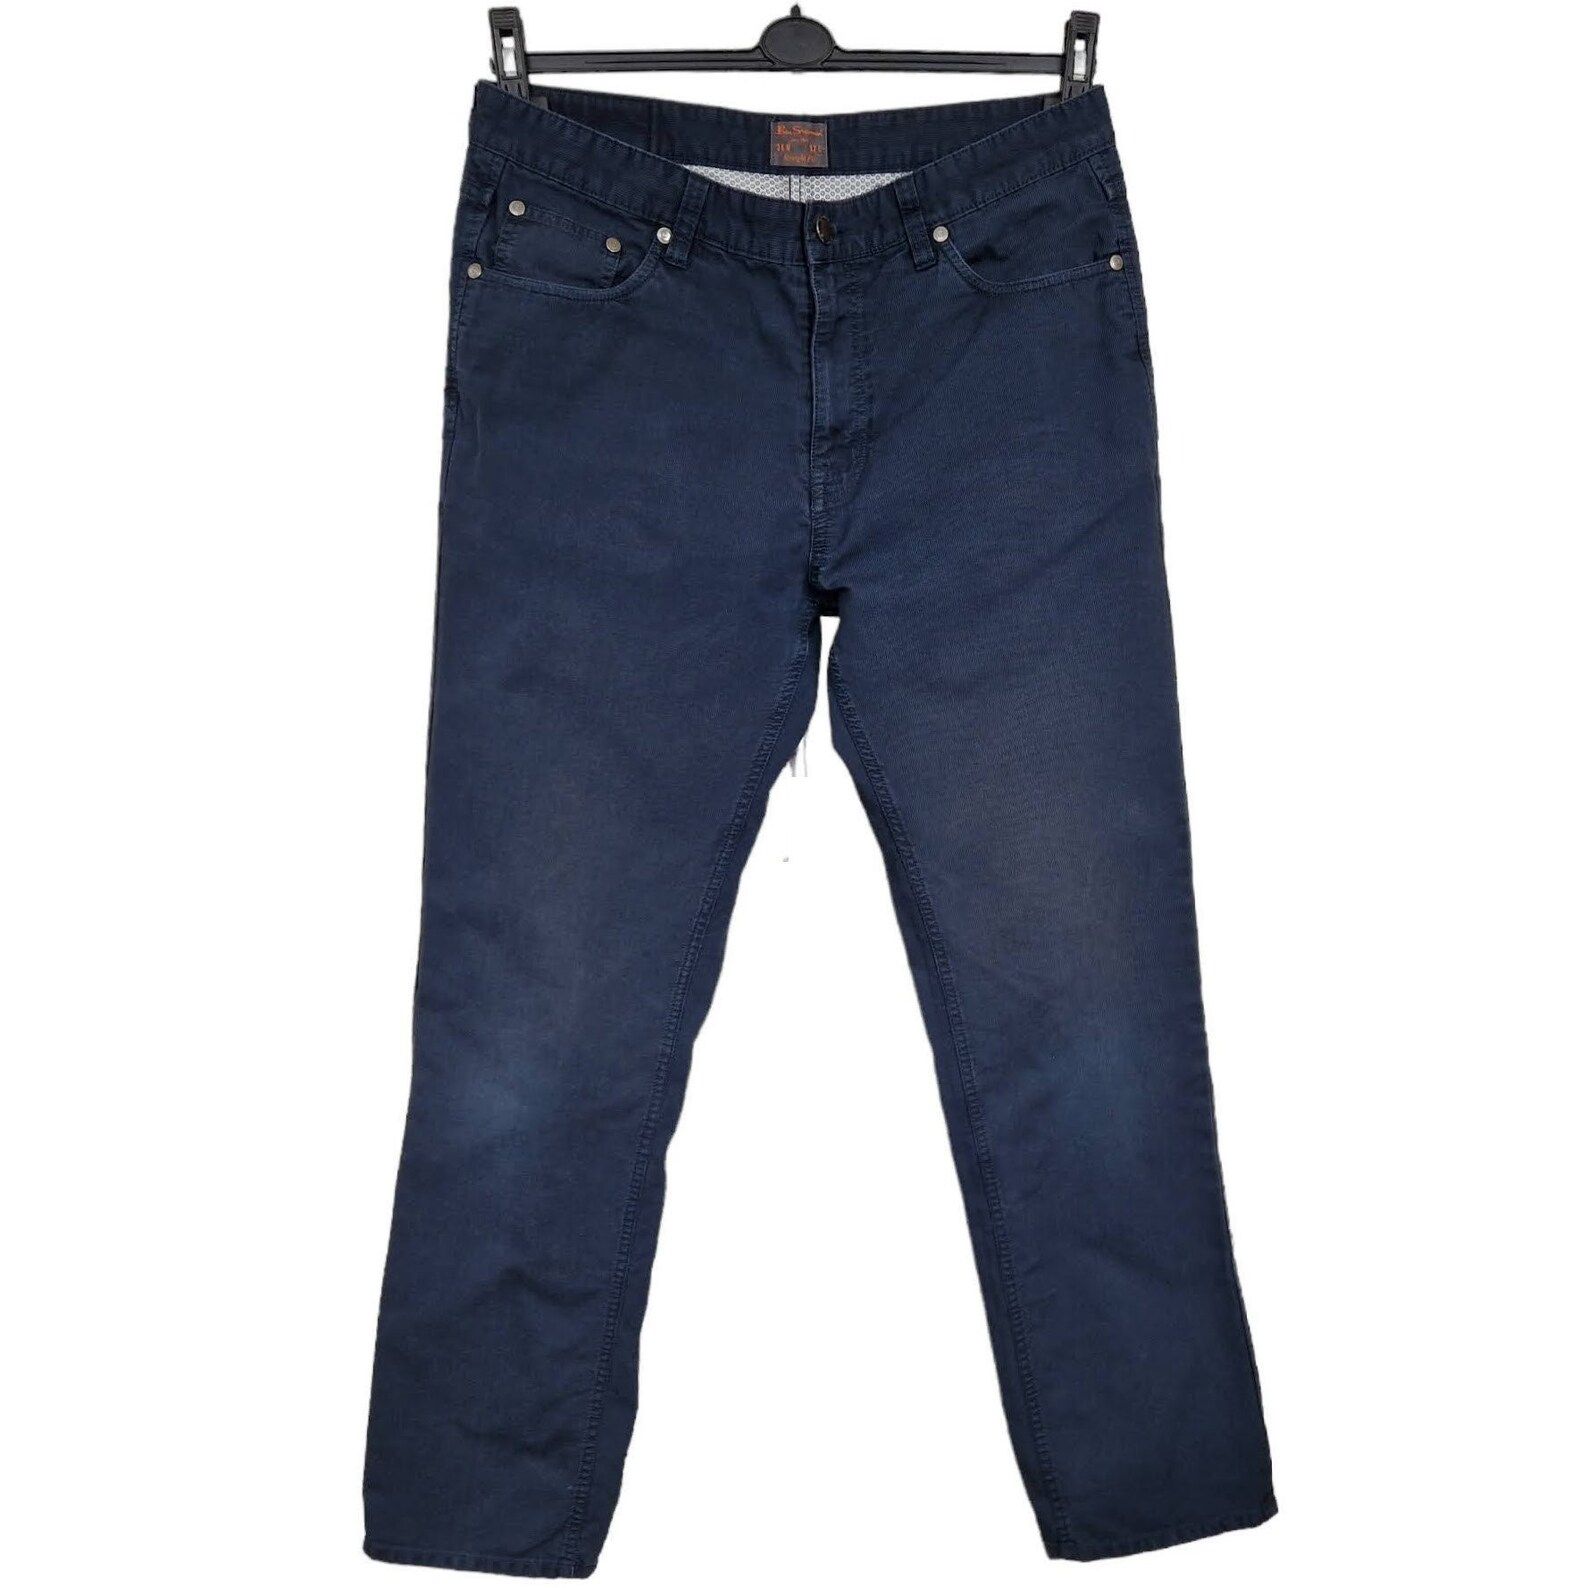 Buy Lymio Men Jeans | Men Jeans Pants | Denim Jeans | Baggy Jeans for Men ( Jeans-04-05) (32, Black) at Amazon.in